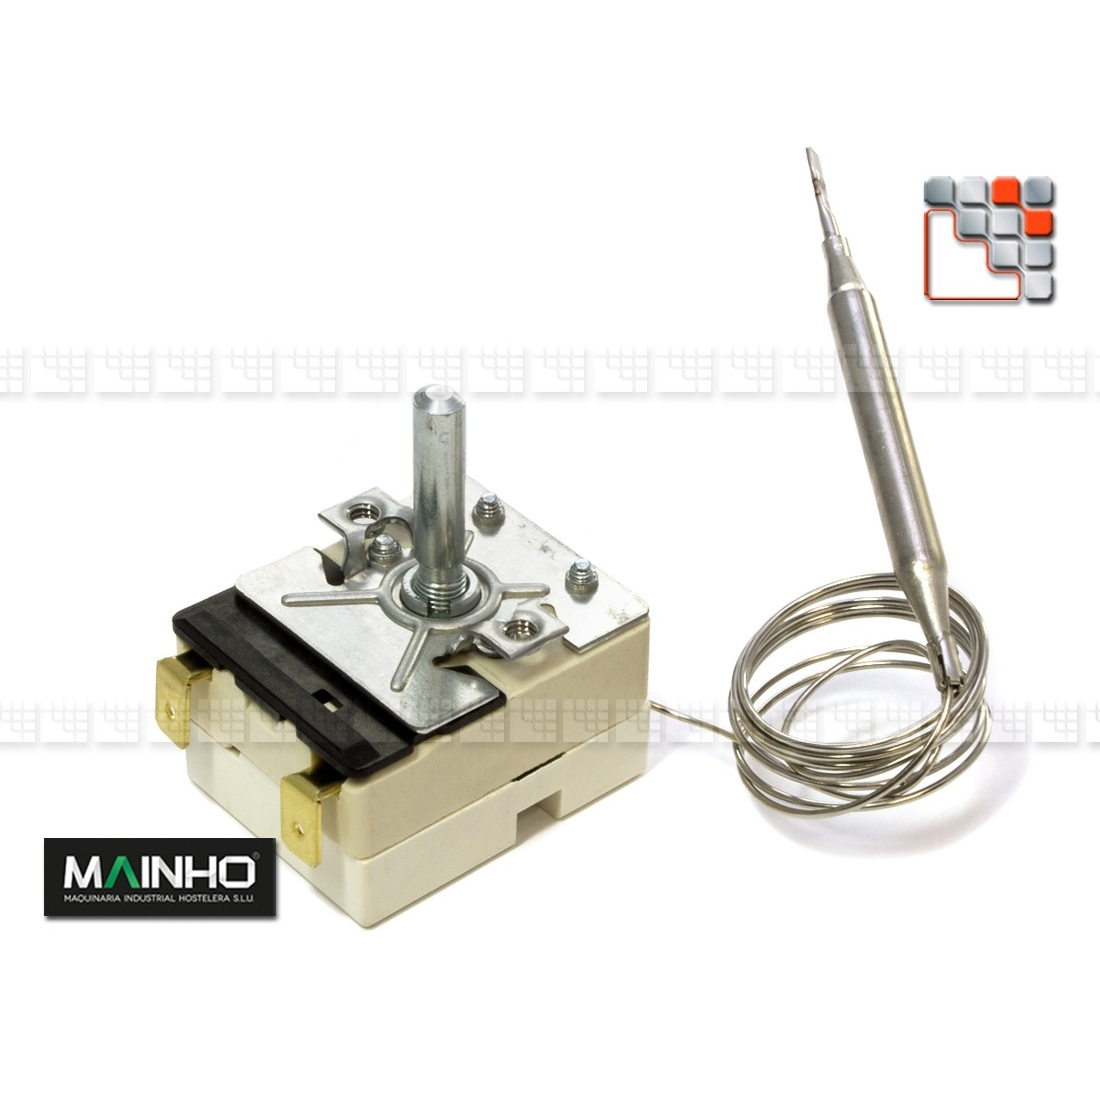 Regulator Variator 205°C 16A MAINHO M36-5613042001 MAINHO SAV - Accessoires Spare parts Electrical MAINHO